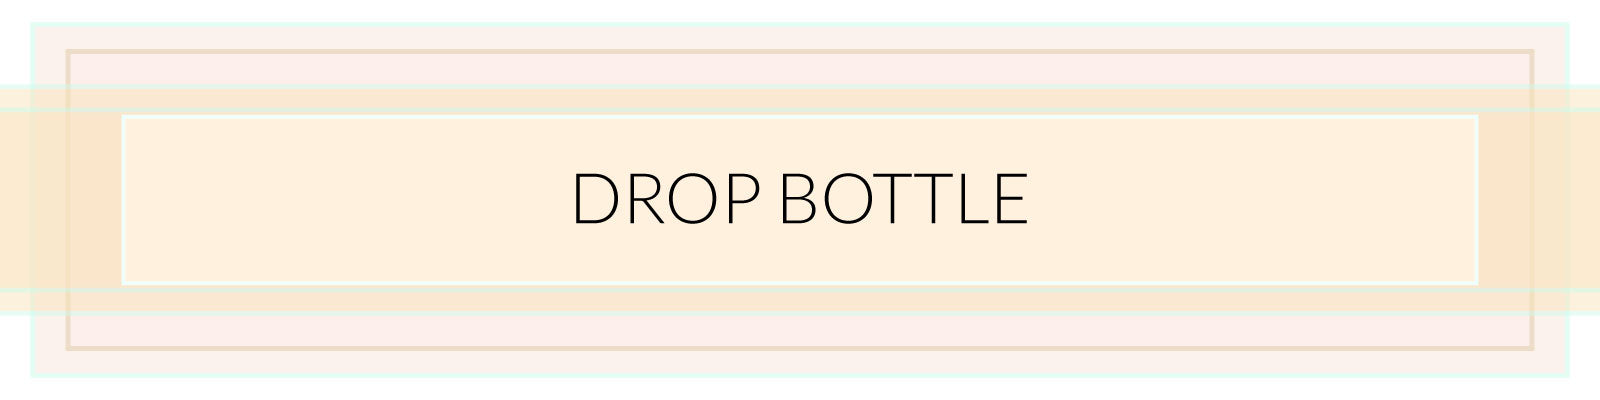 Drop Bottle